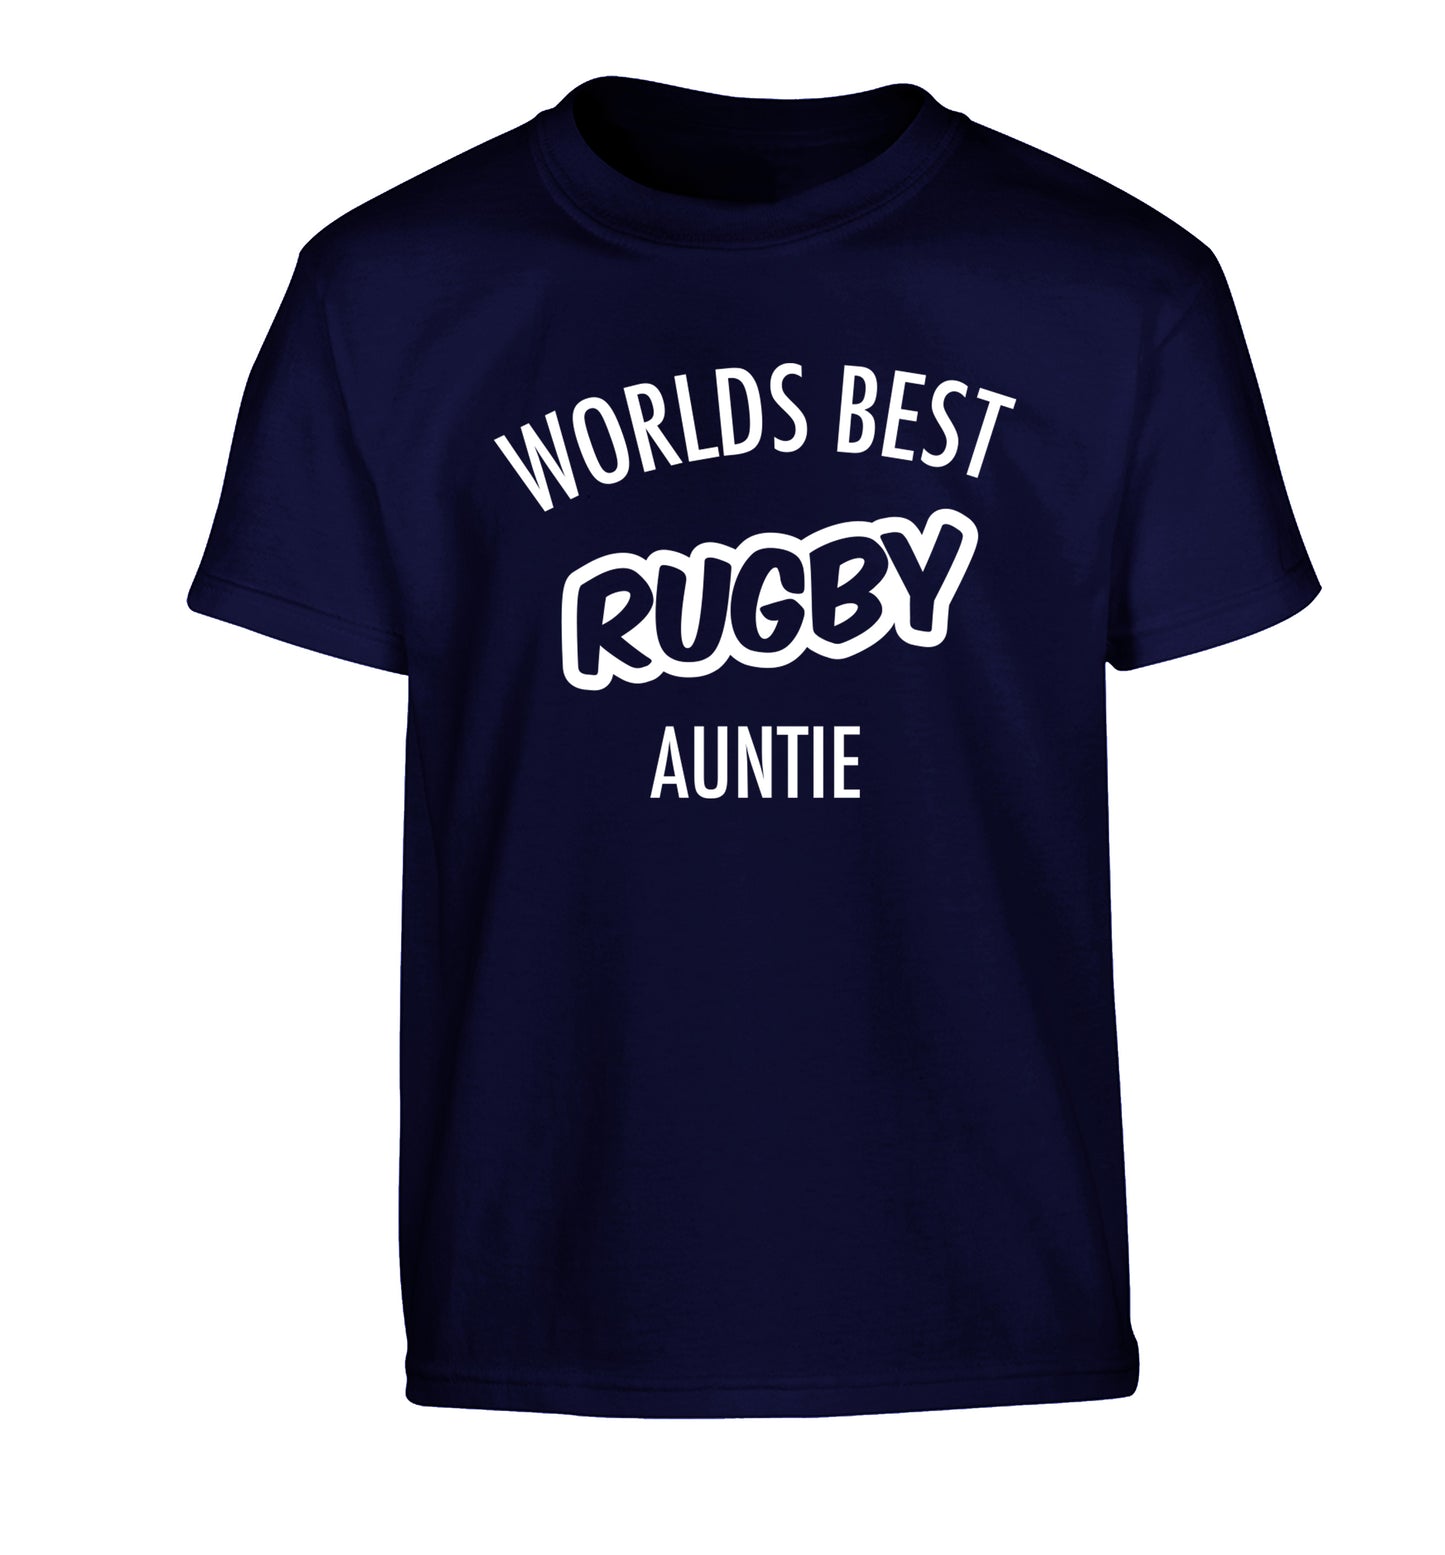 Worlds best rugby auntie Children's navy Tshirt 12-13 Years